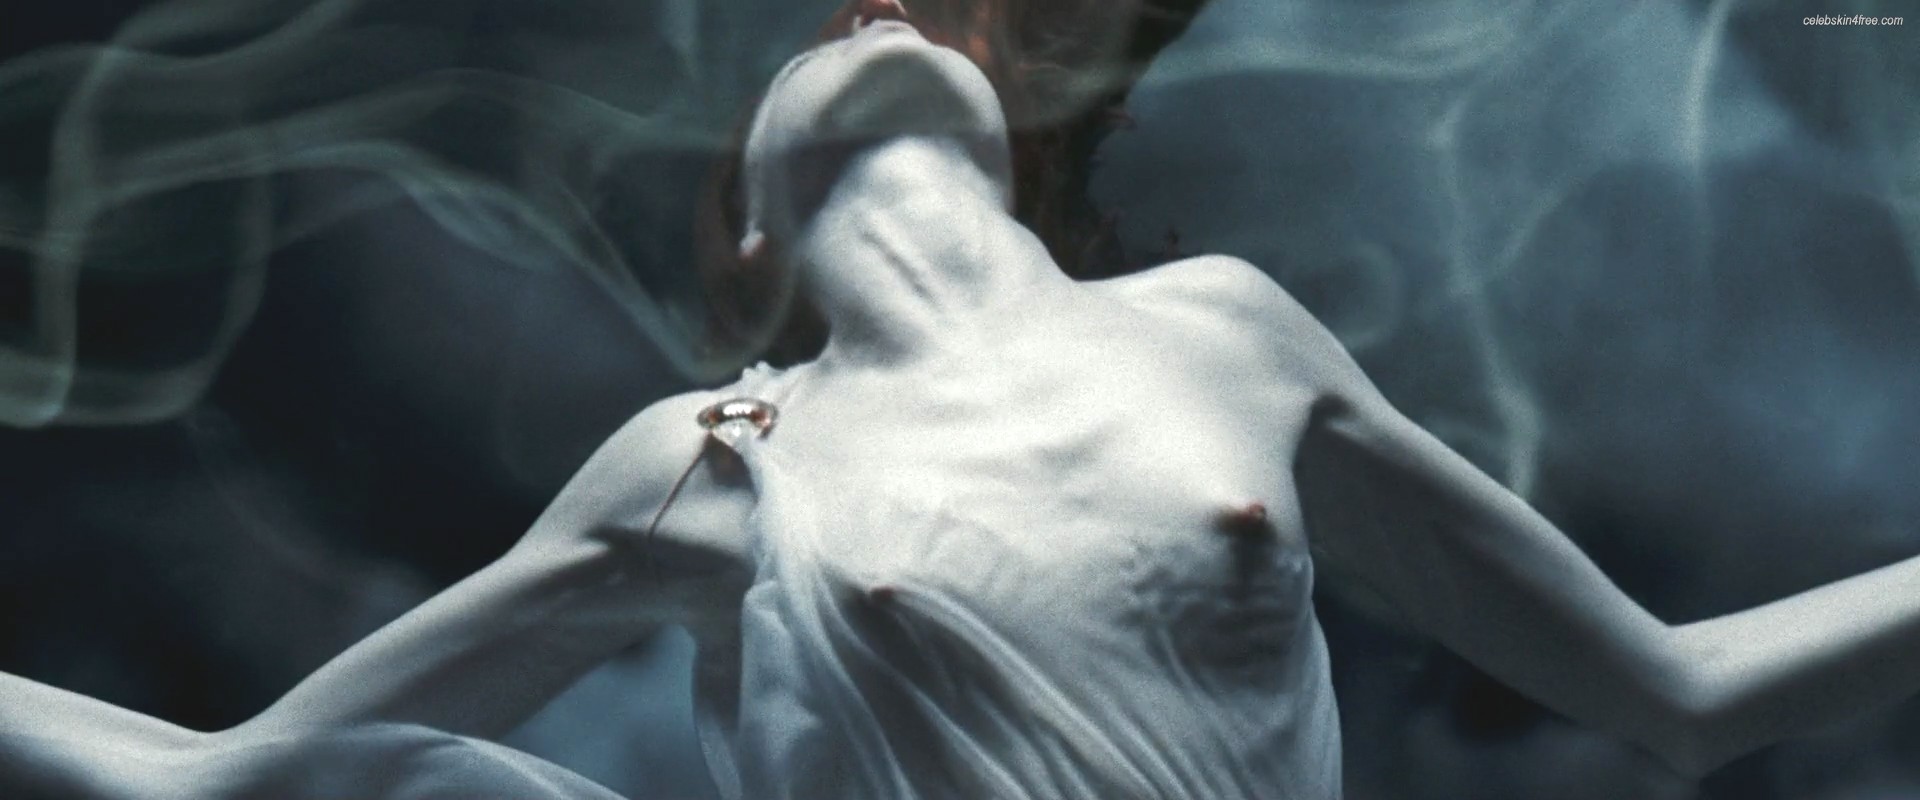 Lena Headey - breasts. 